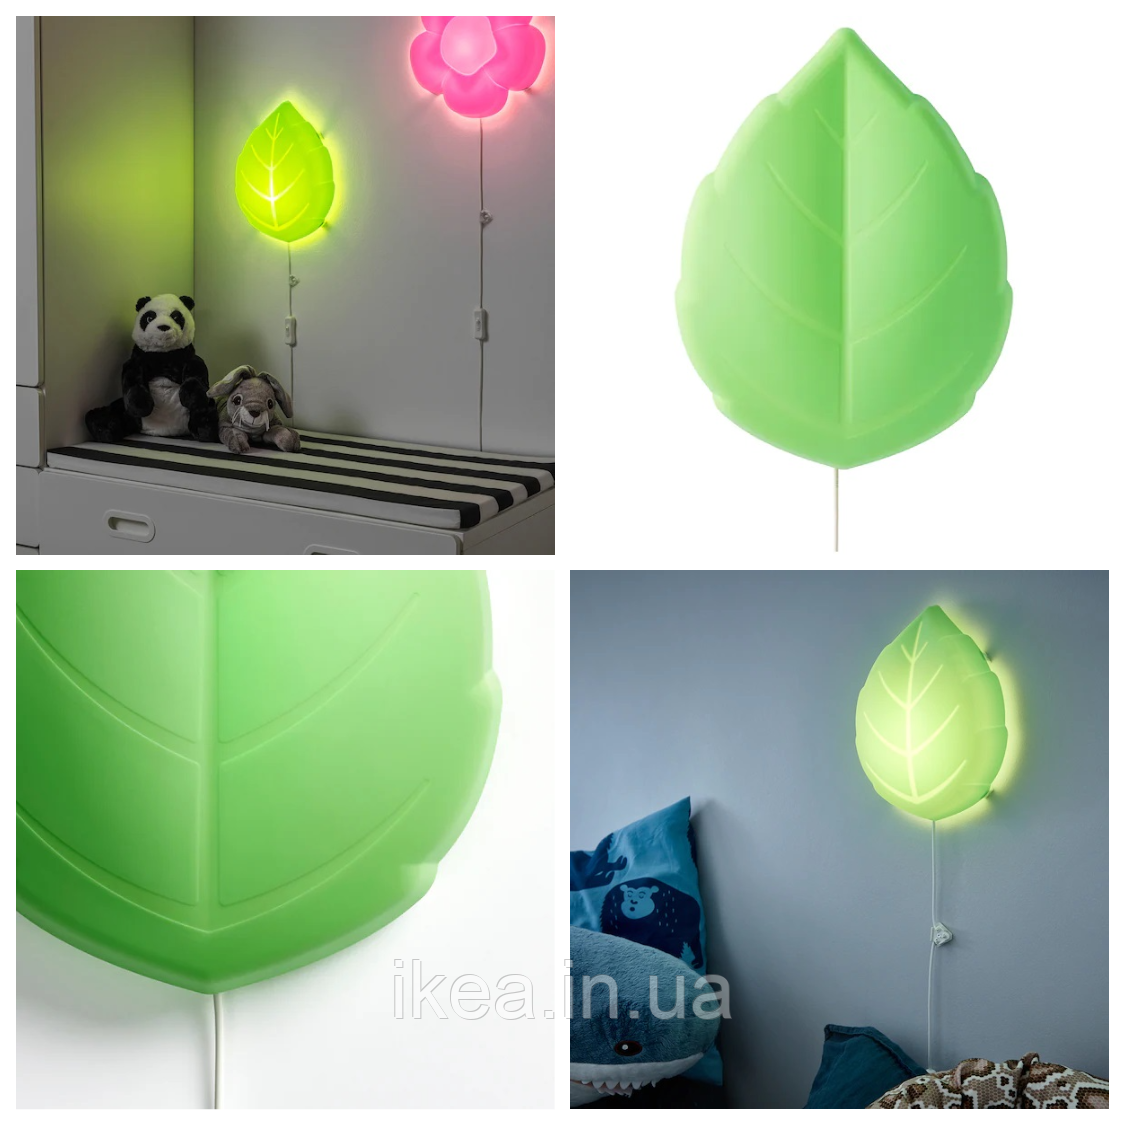 Світильник настінний дитячий LED бра IKEA UPPLYST зелений листочок нічник ІКЕА УППЛЮСТ